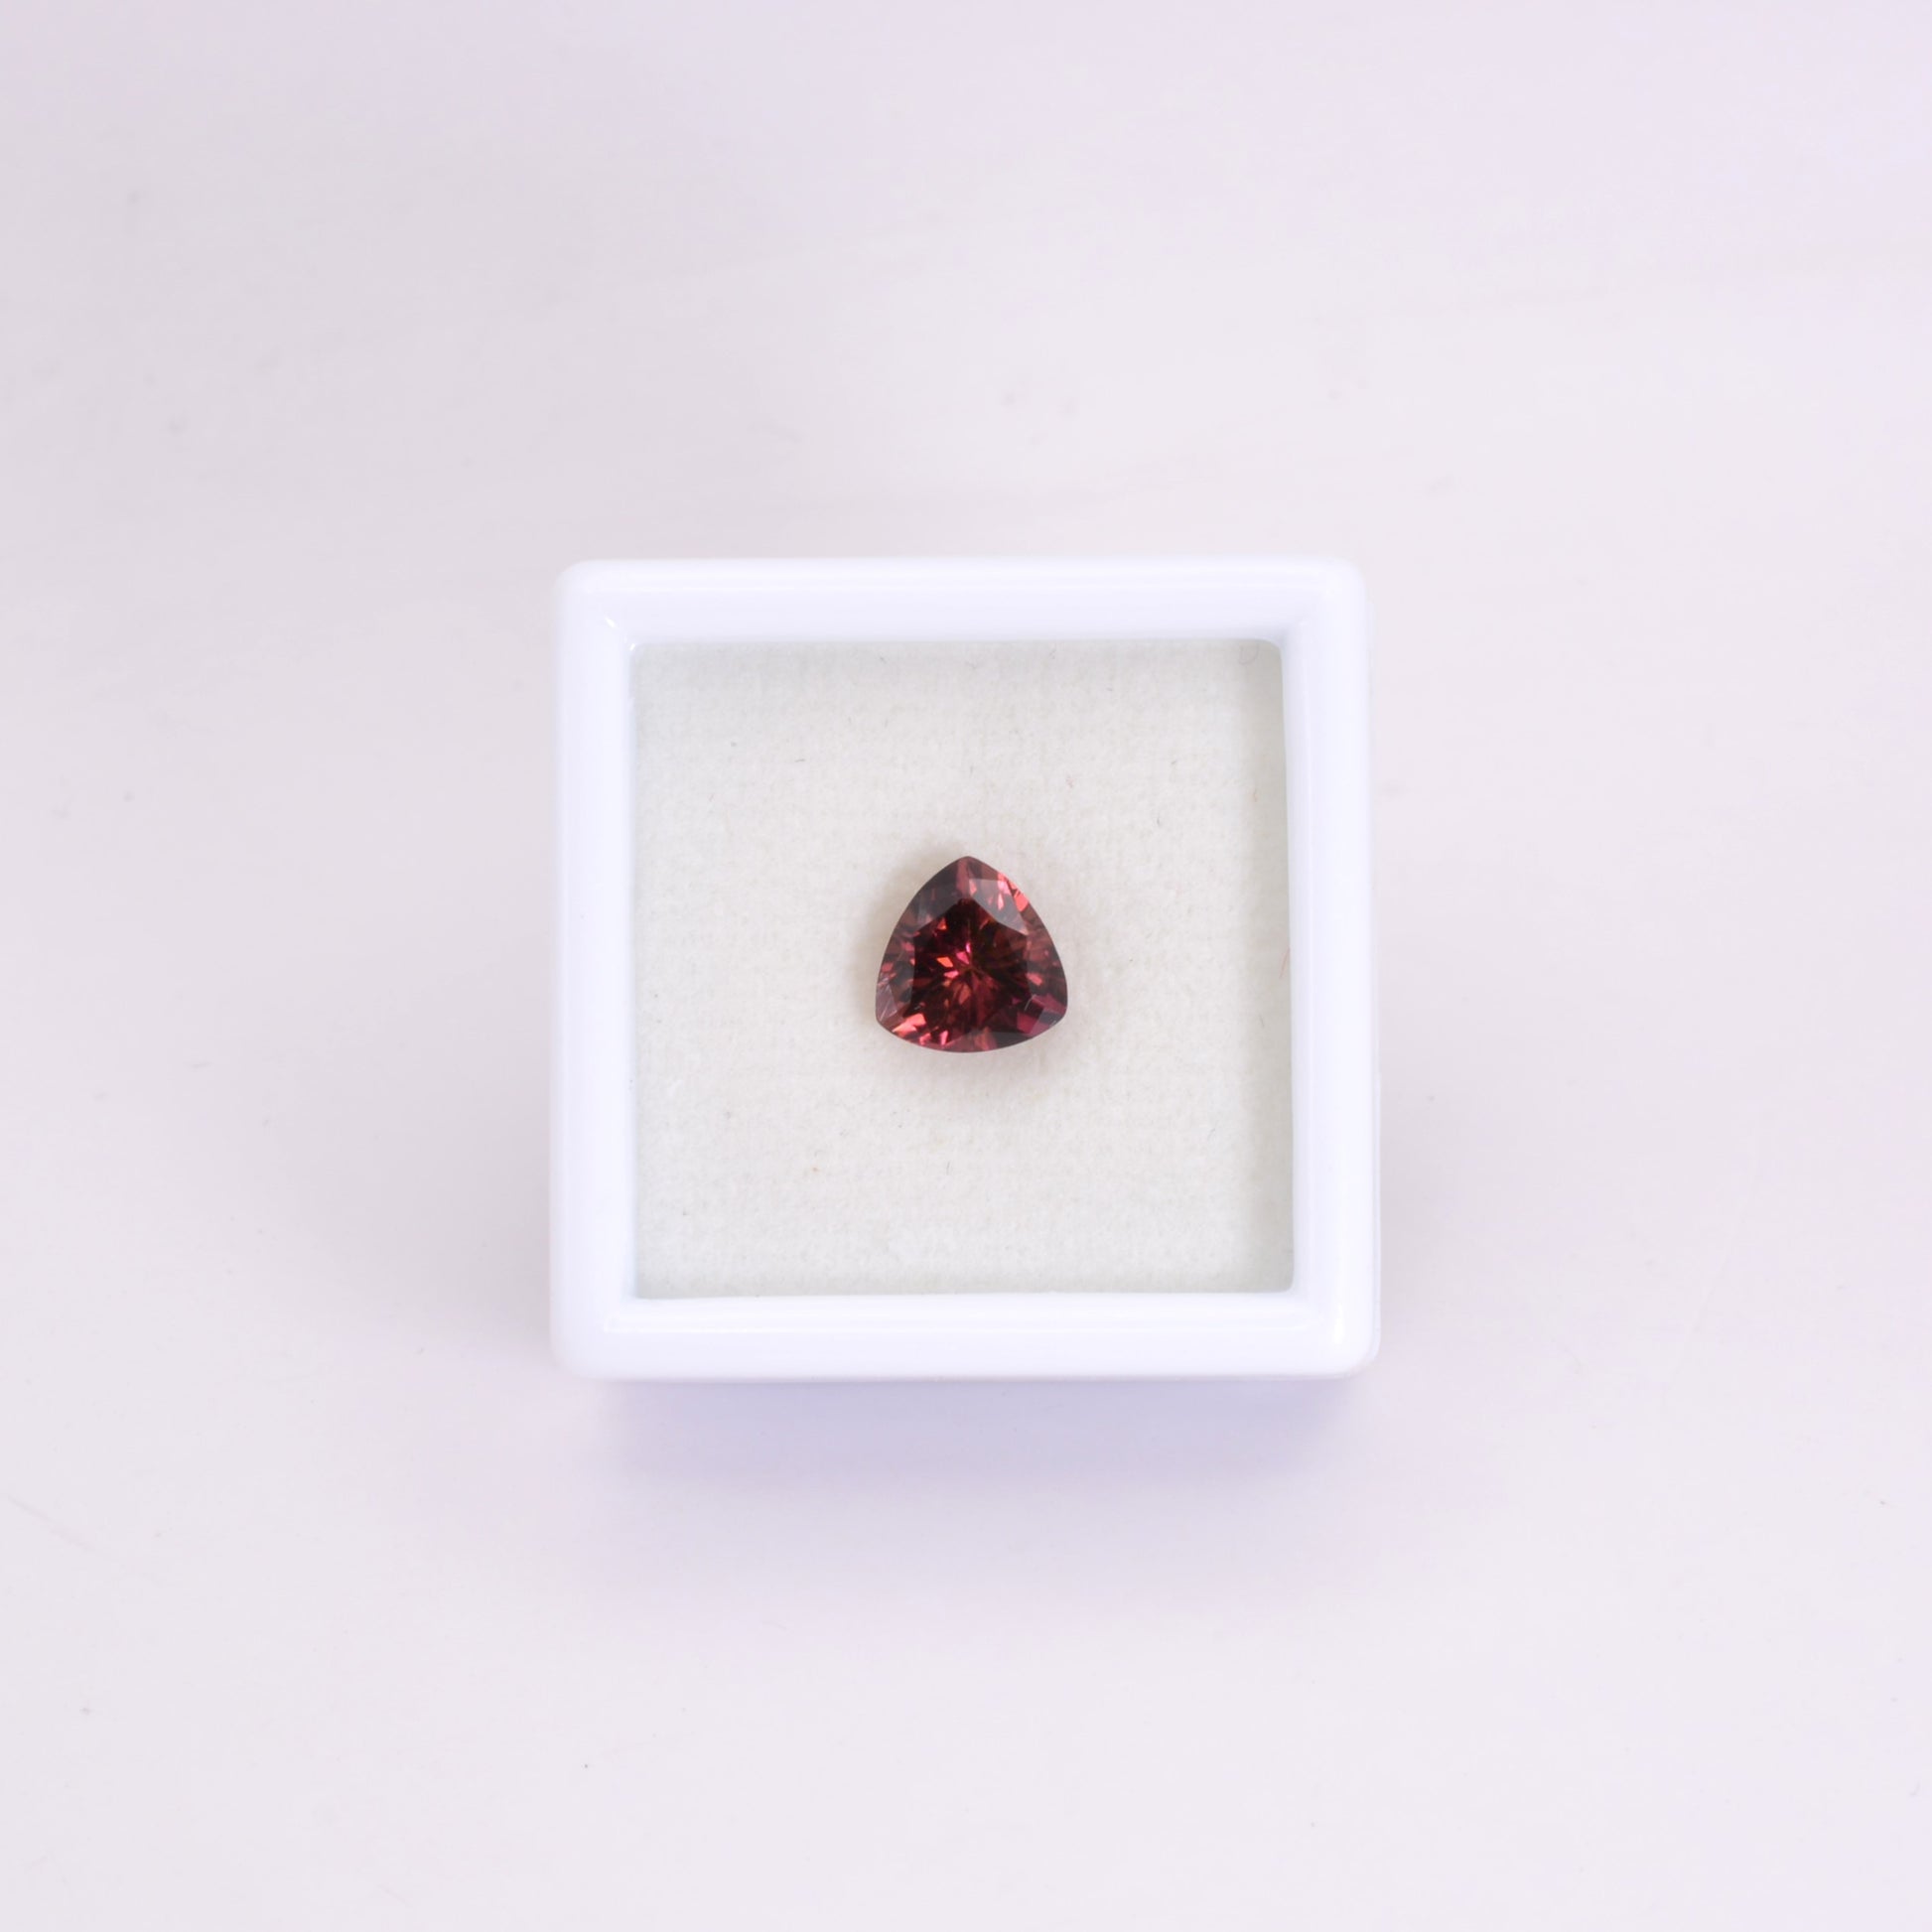 Tourmaline Rose Trillion 1,20ct - pierre précieuse - gemme